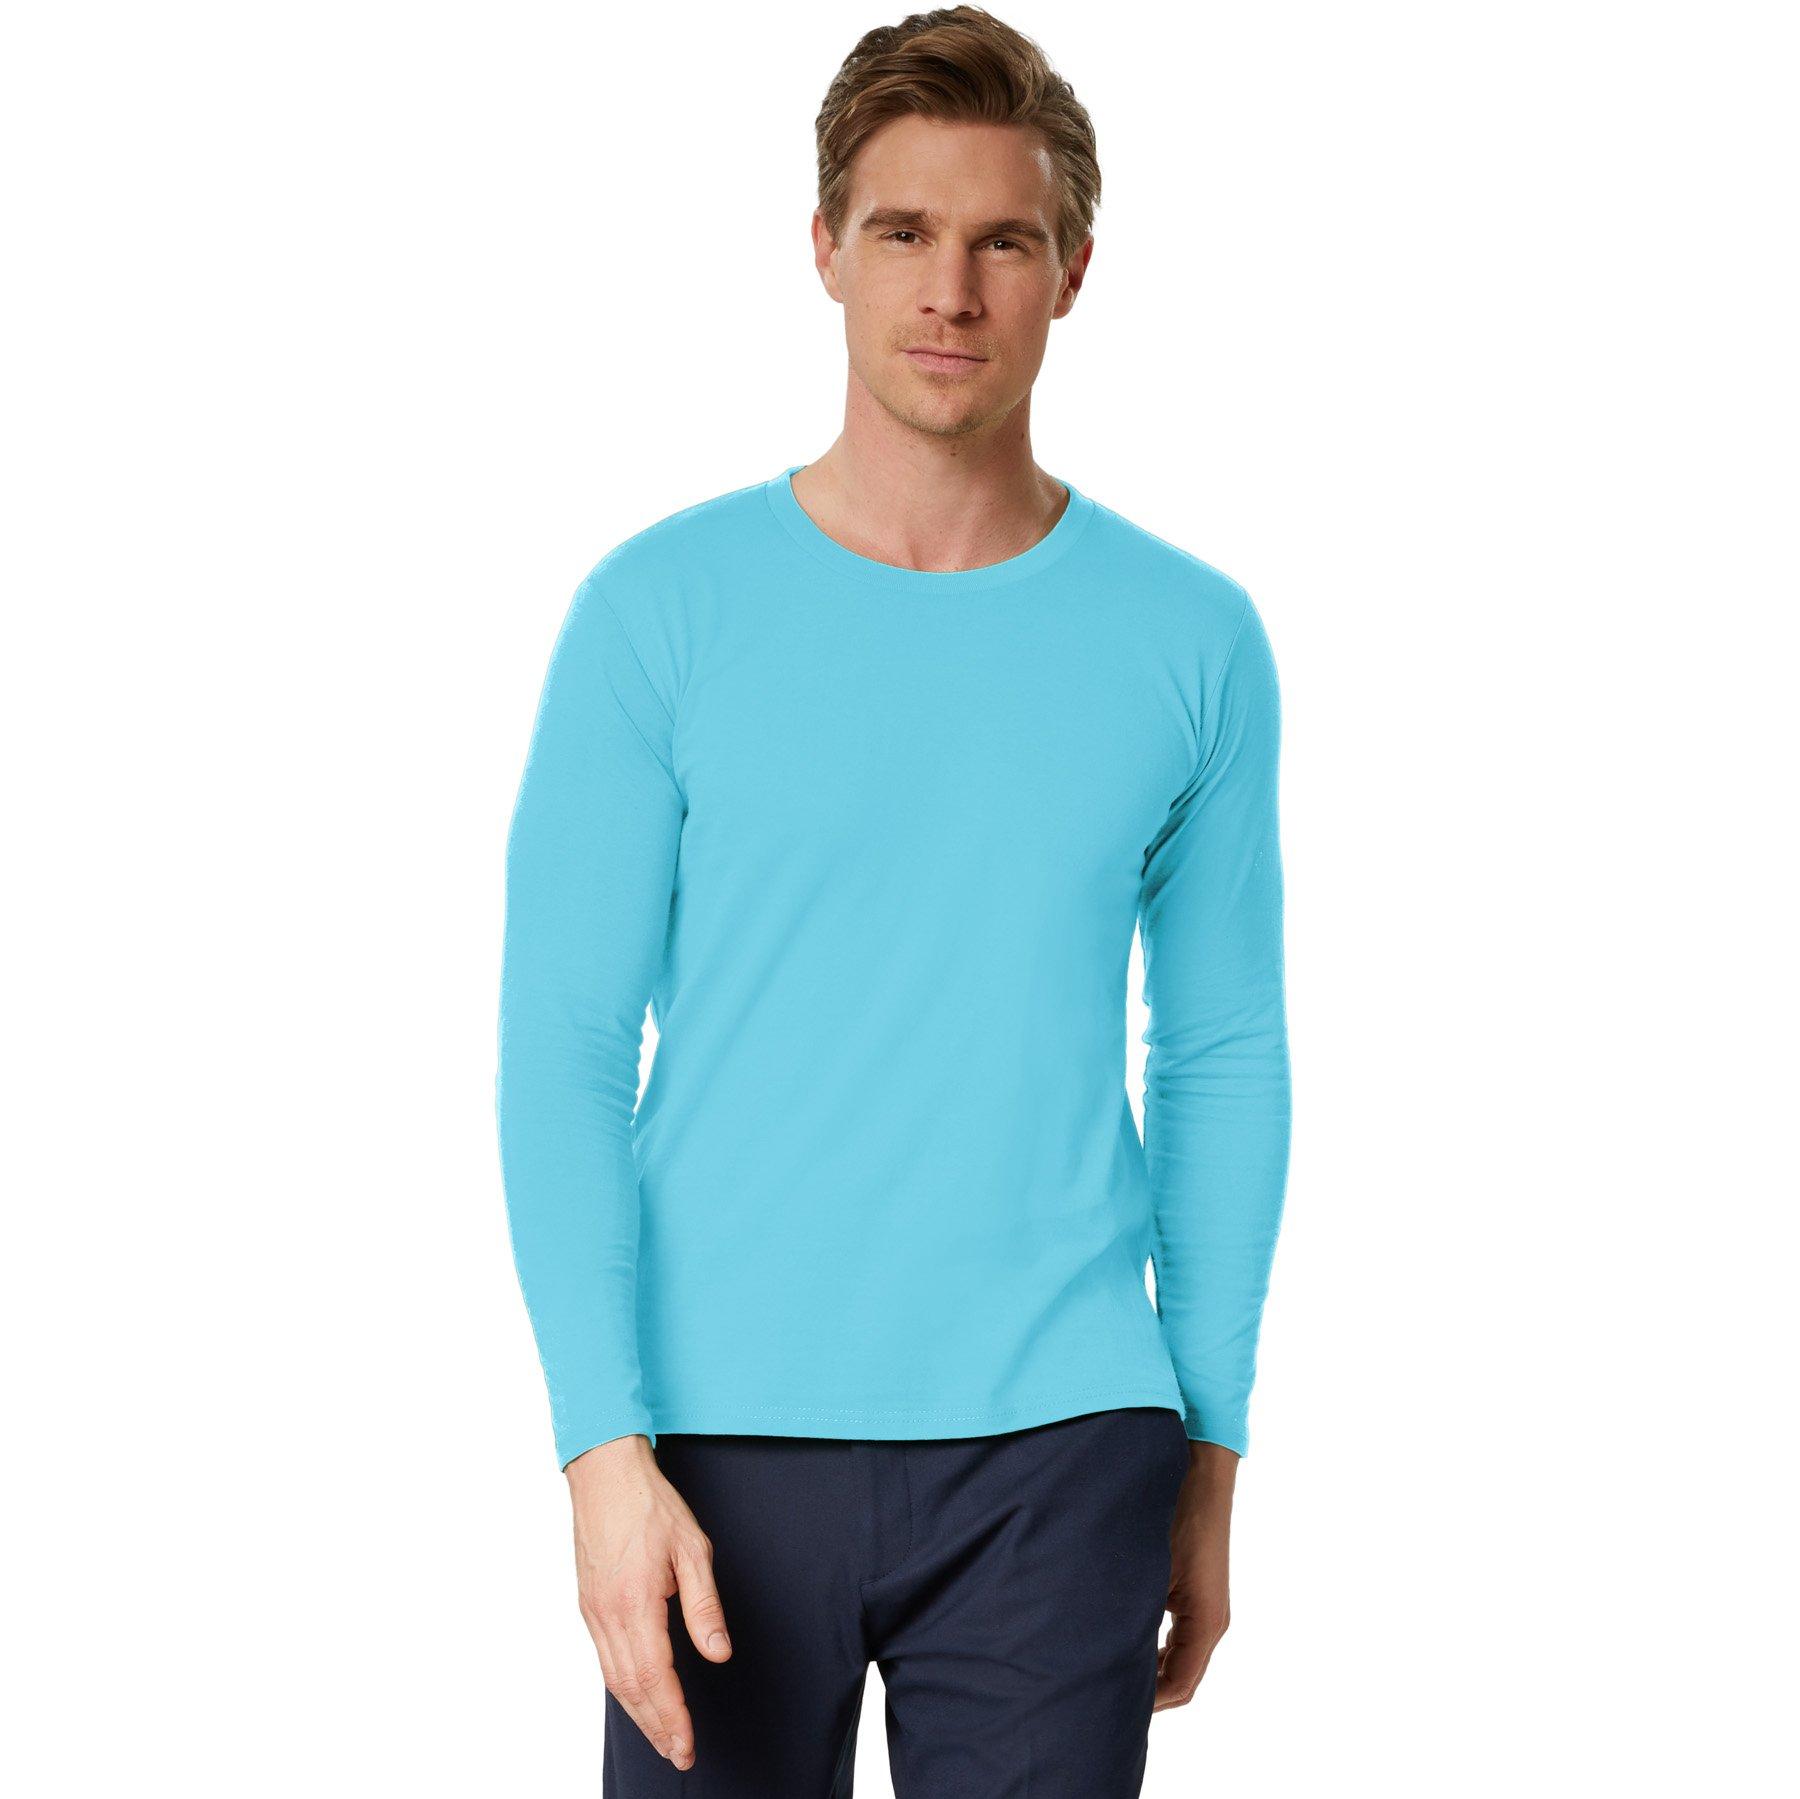 Langarm-shirt Männer Herren Hellblau XL von Tectake